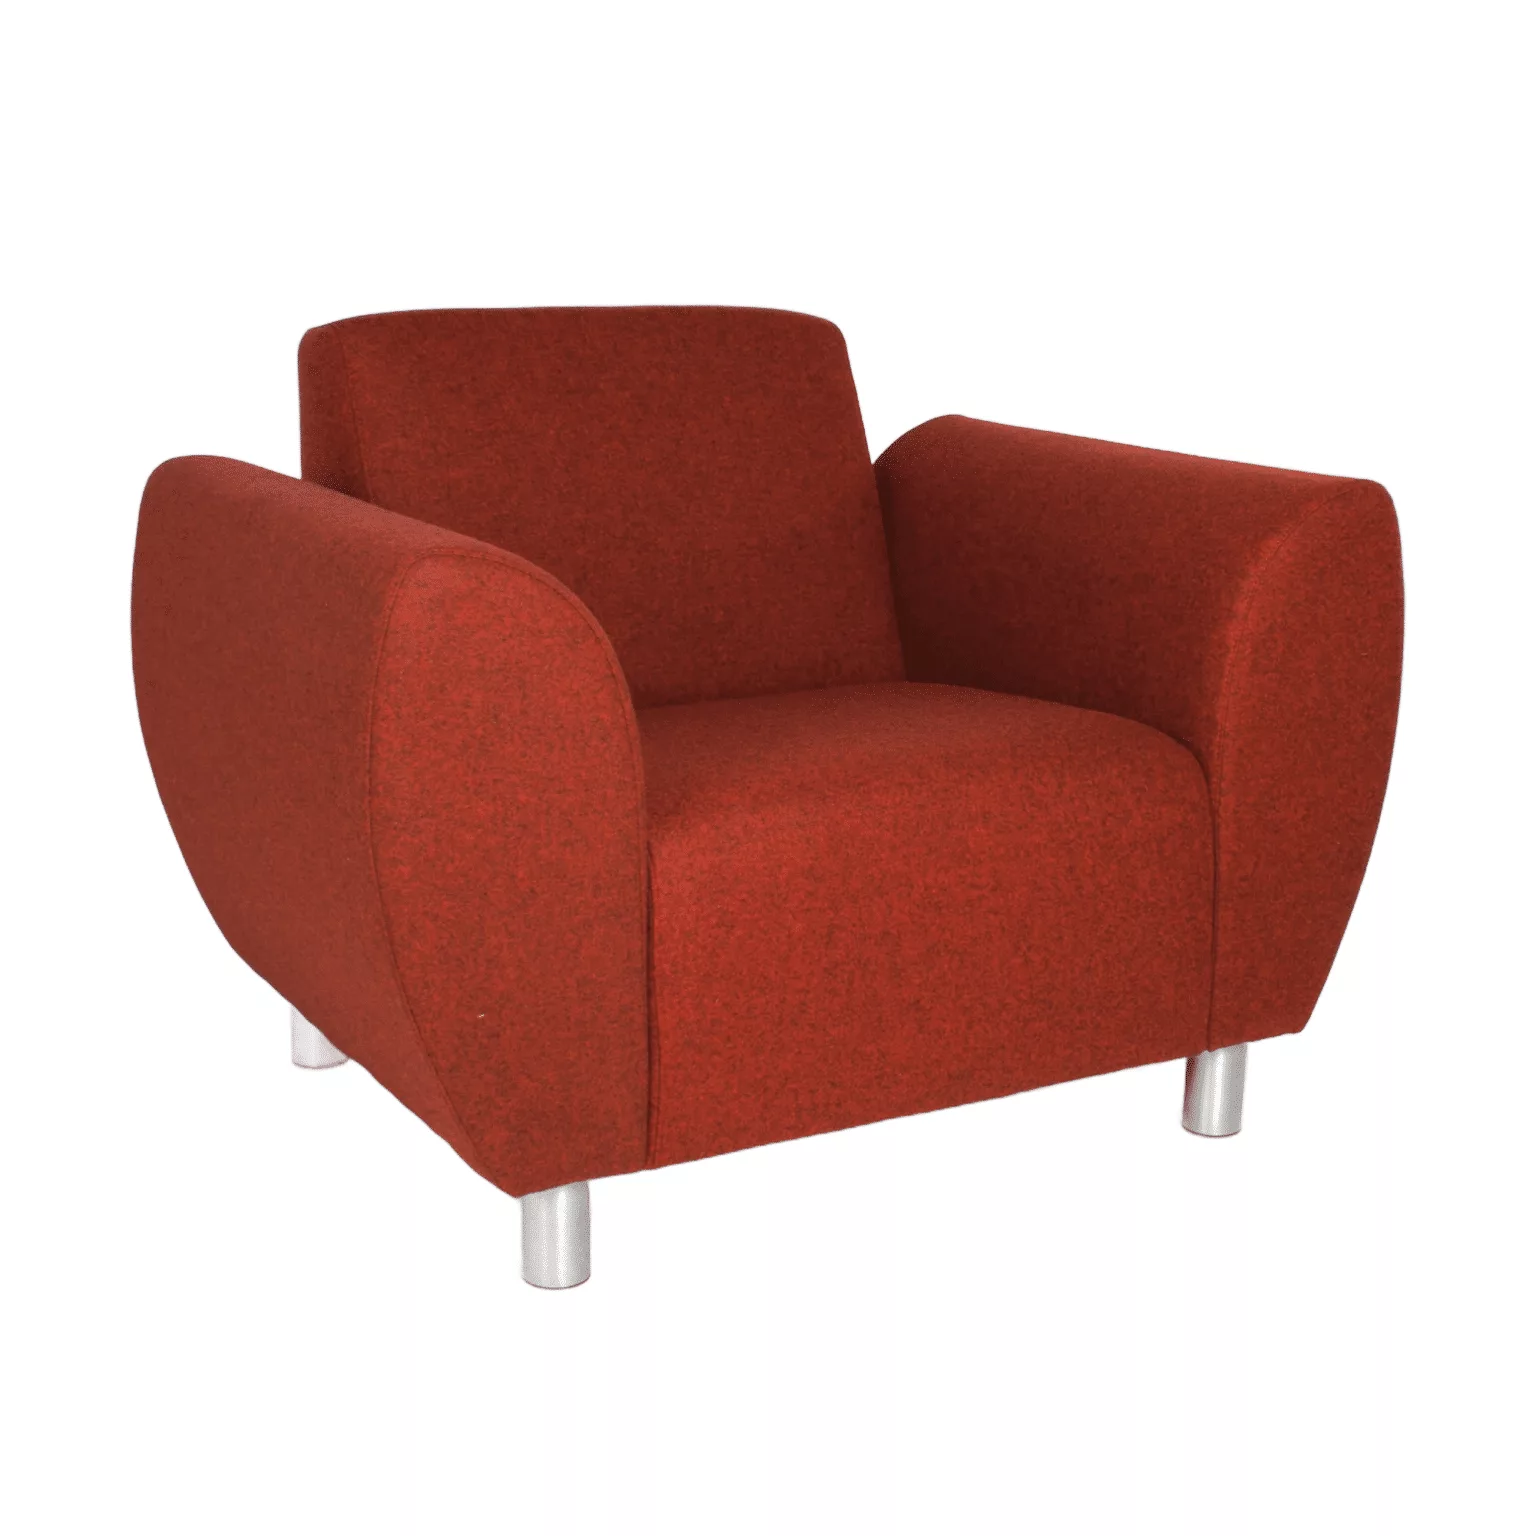 Rode fauteuil met ronde armleuningen en metalen meubelpoten.